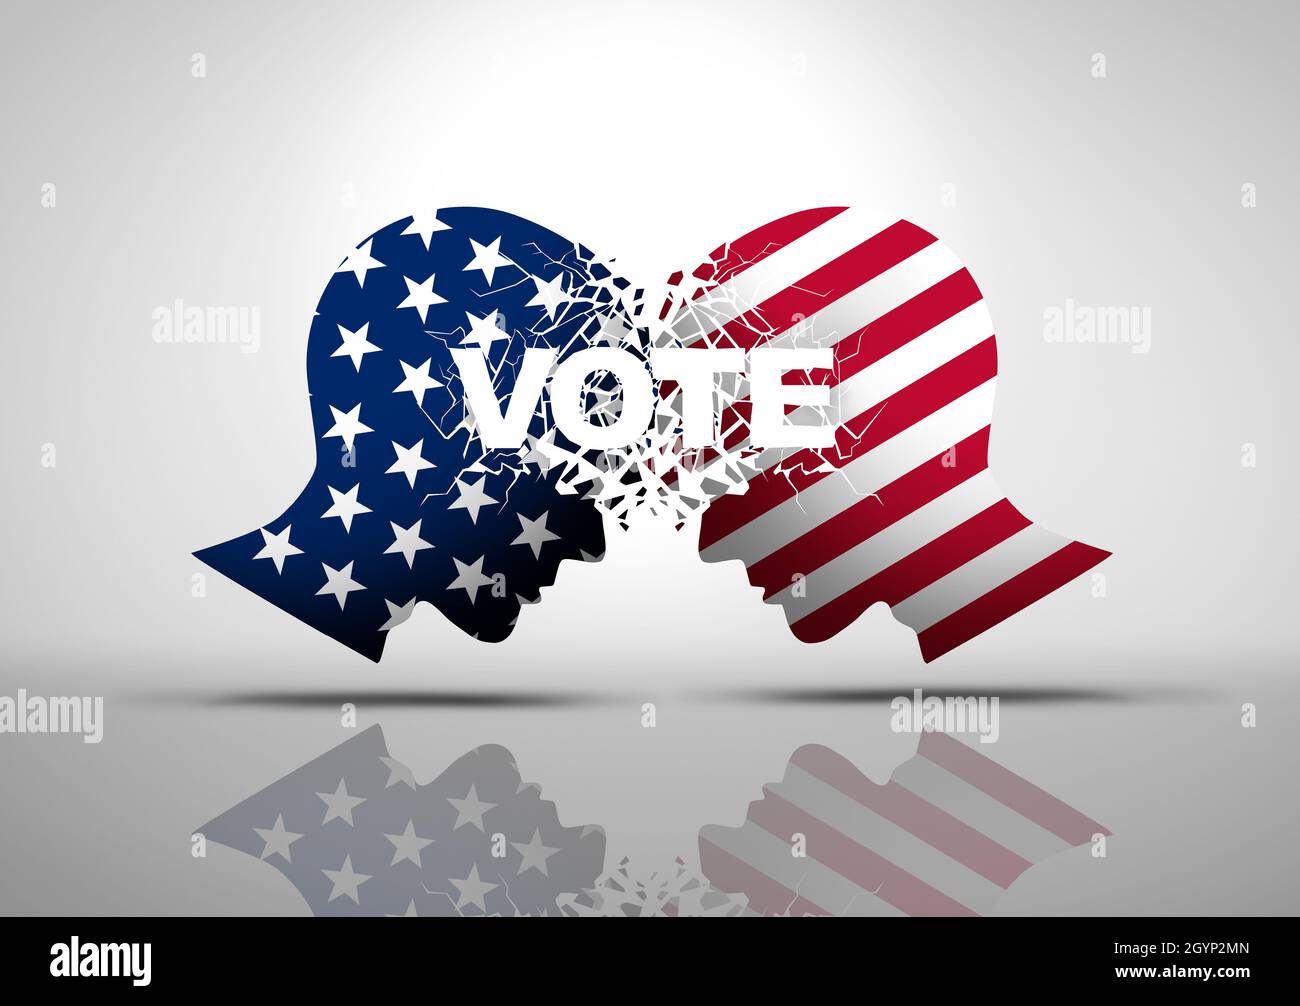 La politica elettorale degli Stati Uniti e il dibattito di voto degli Stati Uniti o la guerra di voto politico come un conflitto culturale americano con due parti opposte come conservatore. Foto Stock